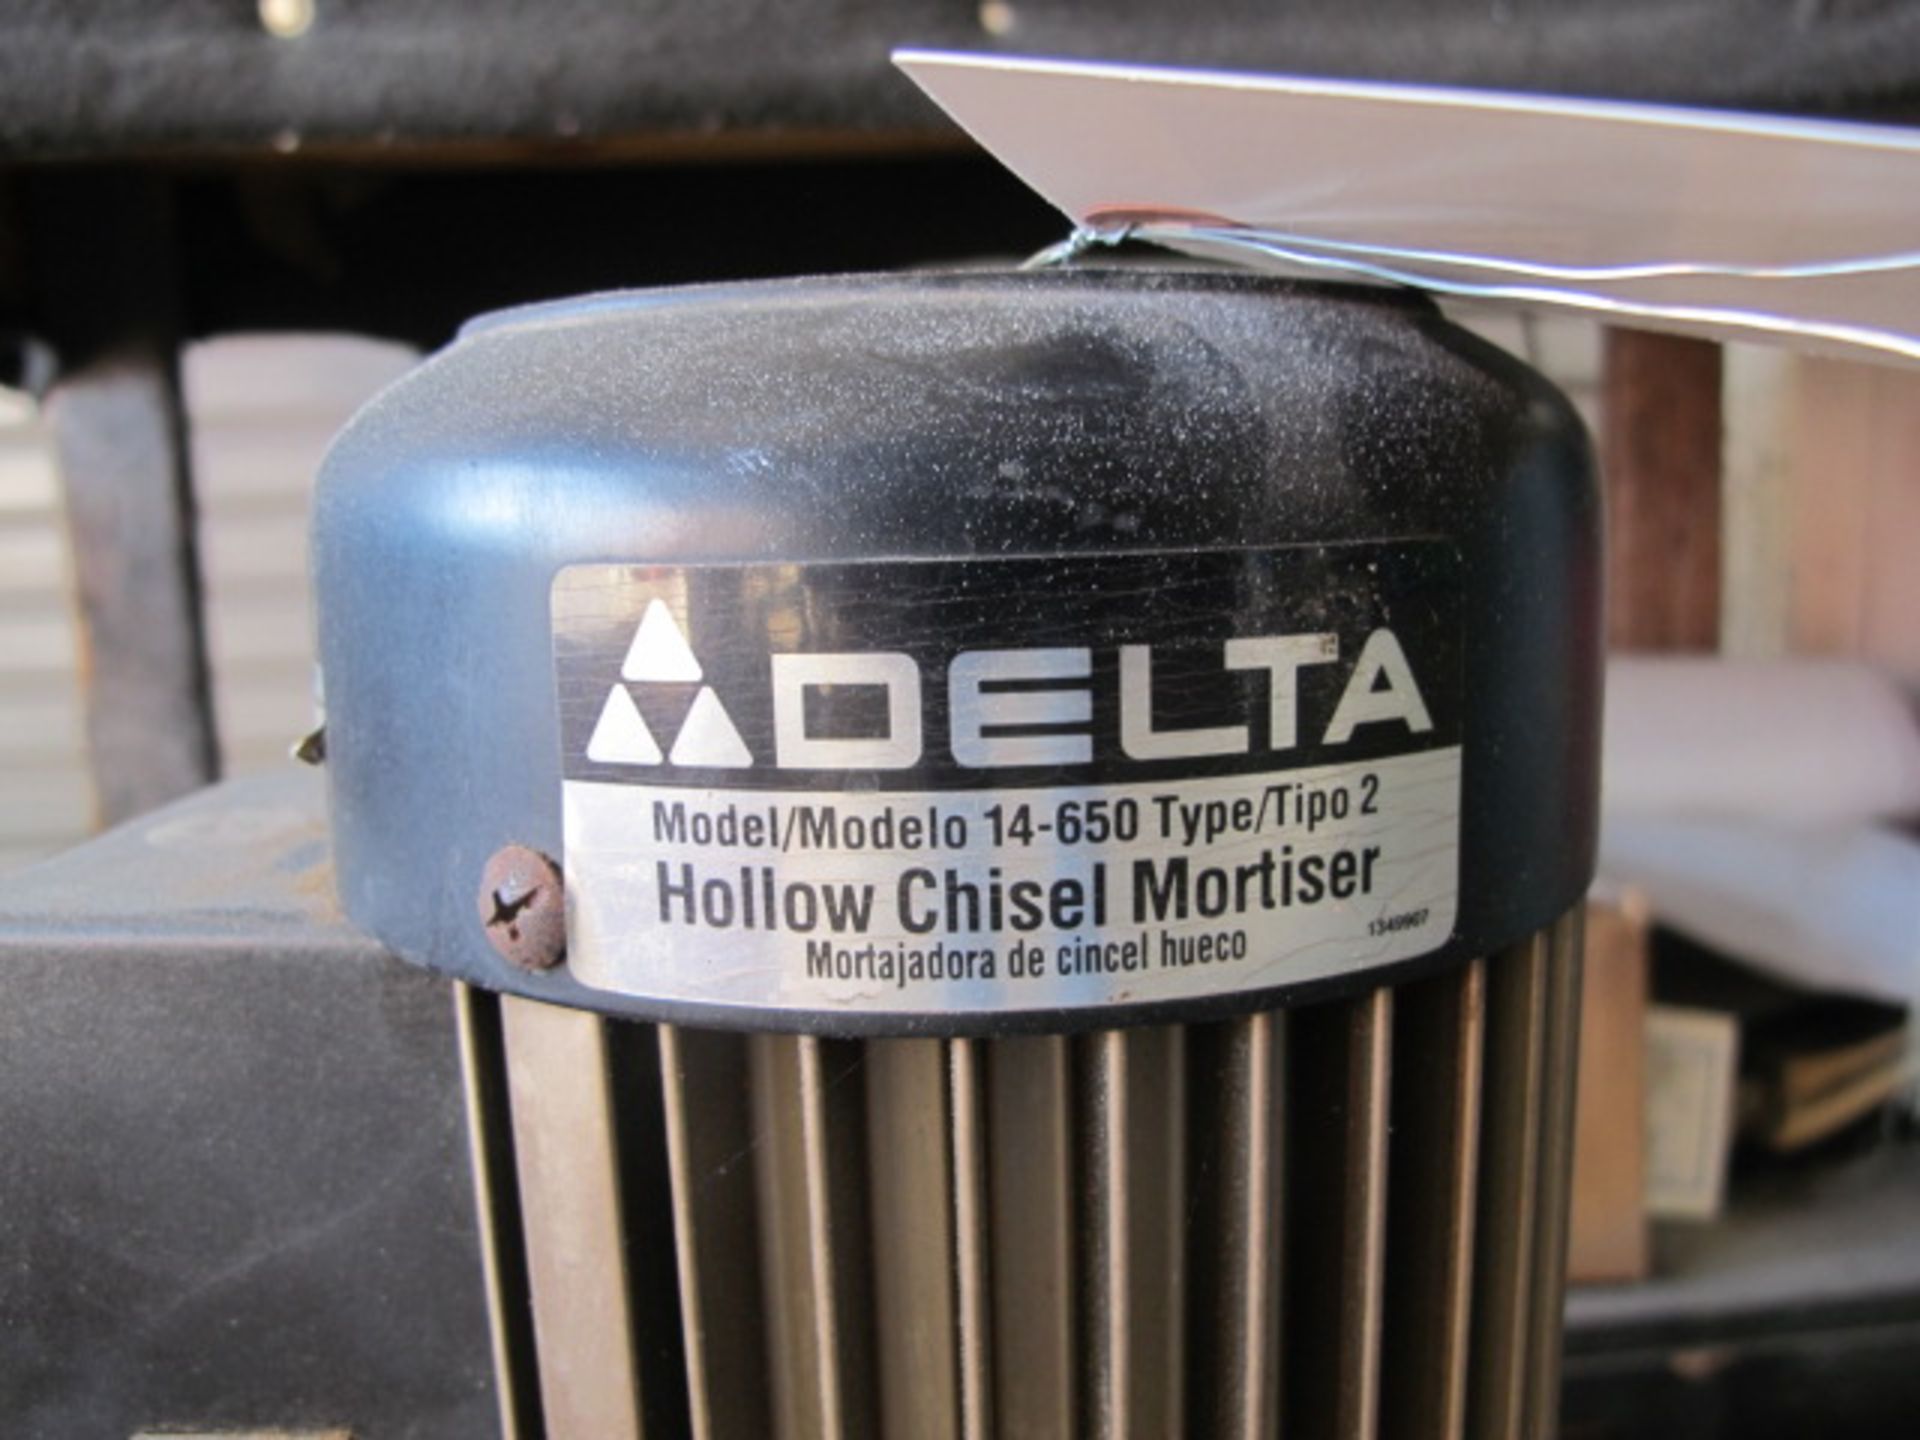 Delta mdl. 14-650 Hollow Chisel Mortiser - Image 3 of 3